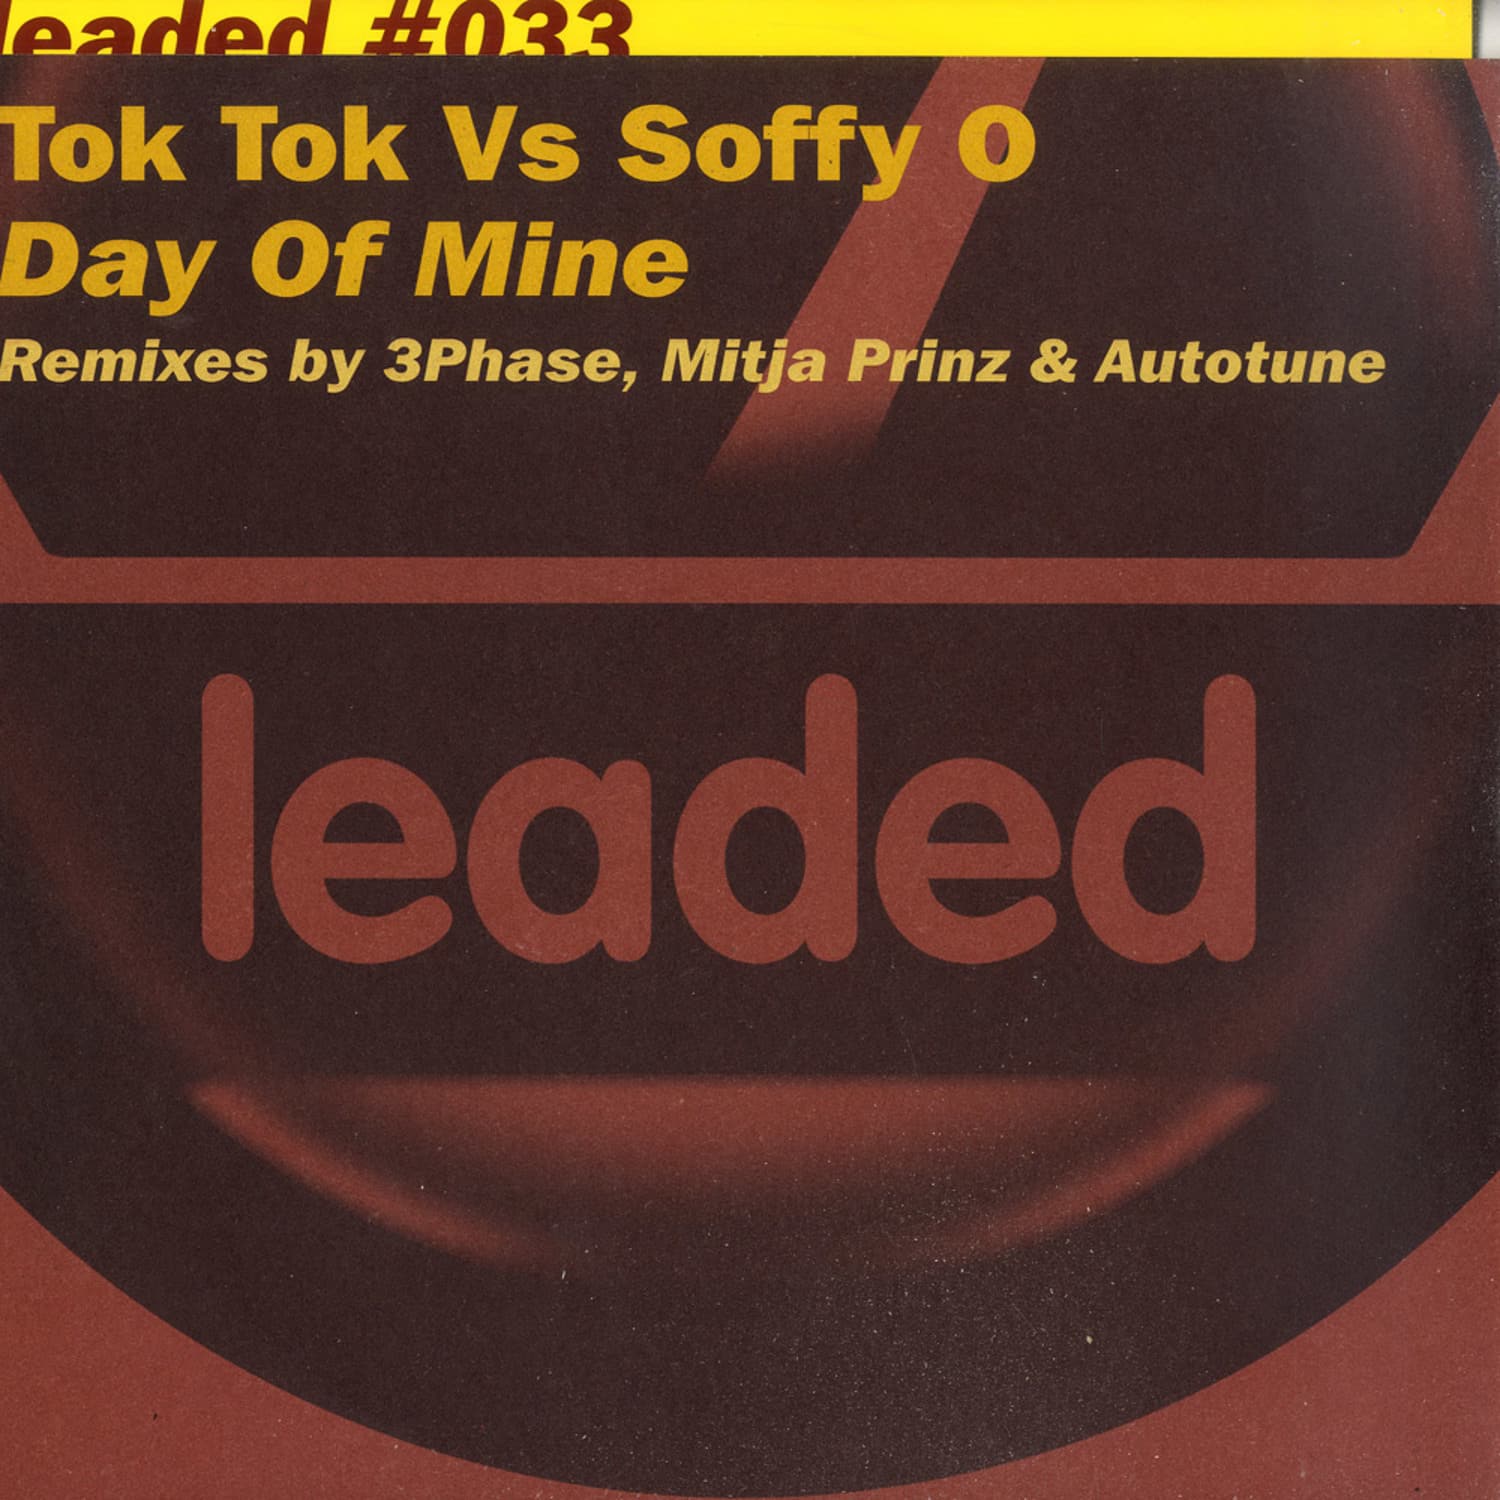 Tok Tok vs Soffy O - DAY OF MINE 